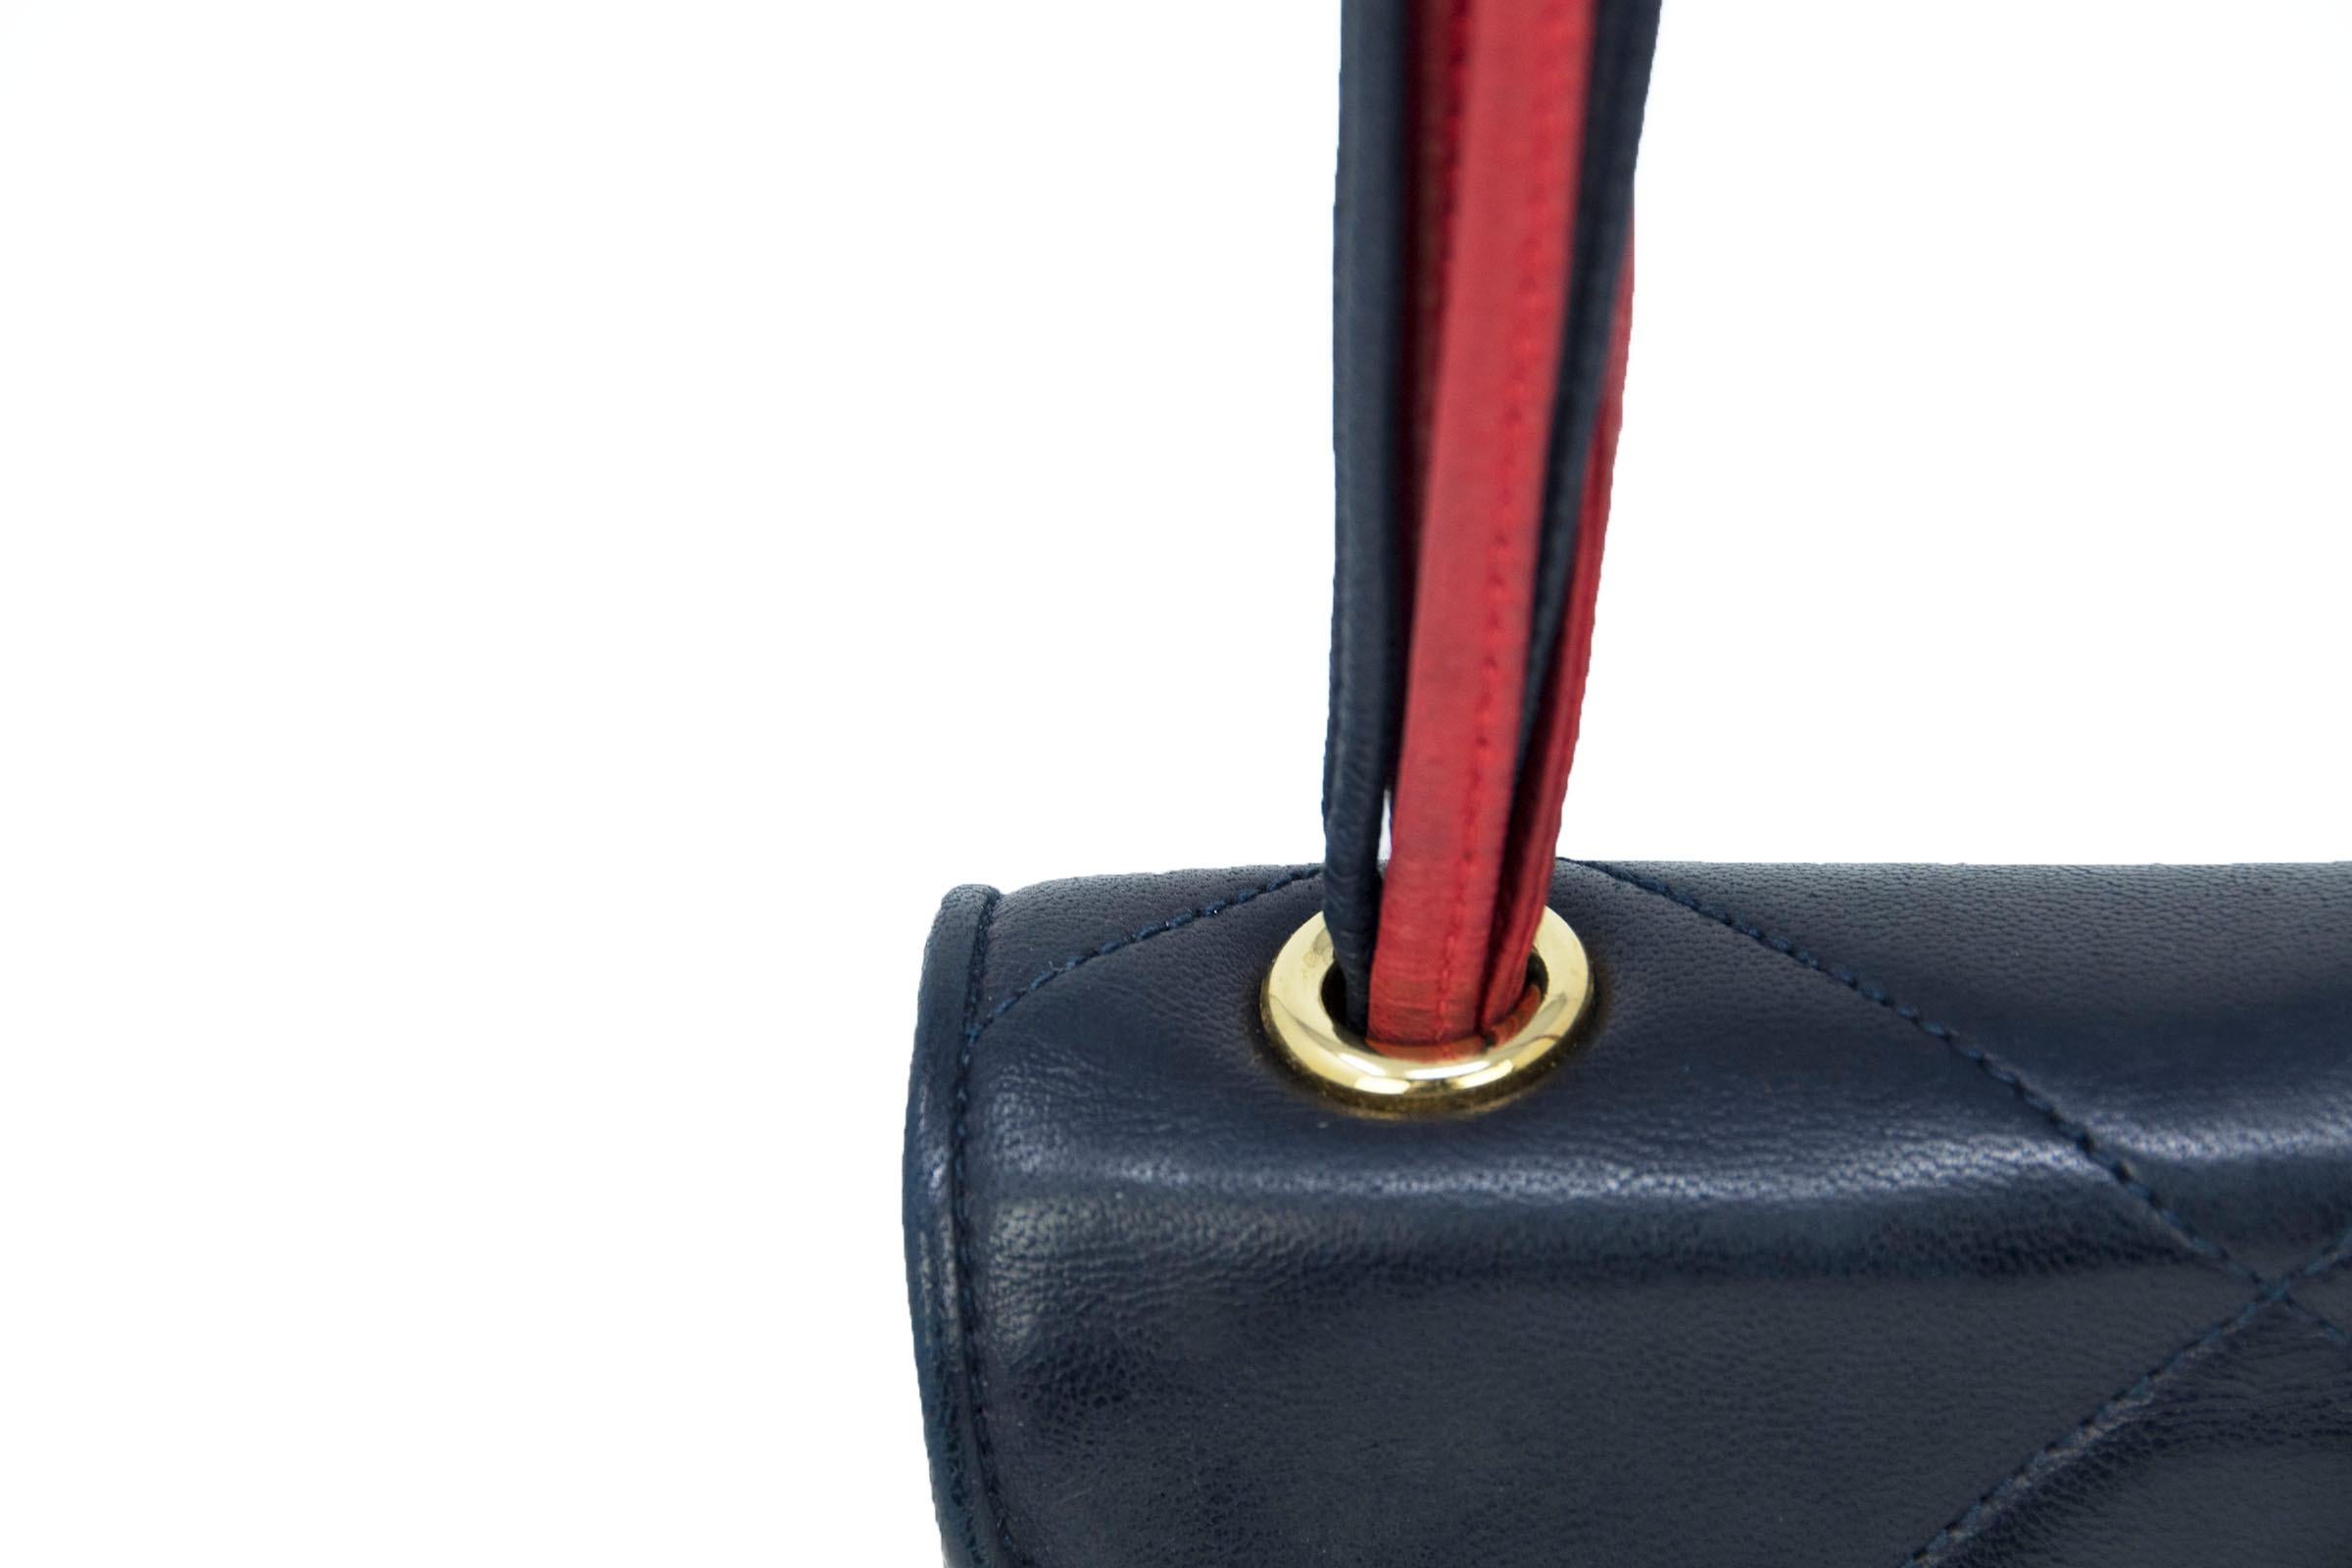 Vintage Chanel Red & Black Quilted Leather Handbag For Sale 4